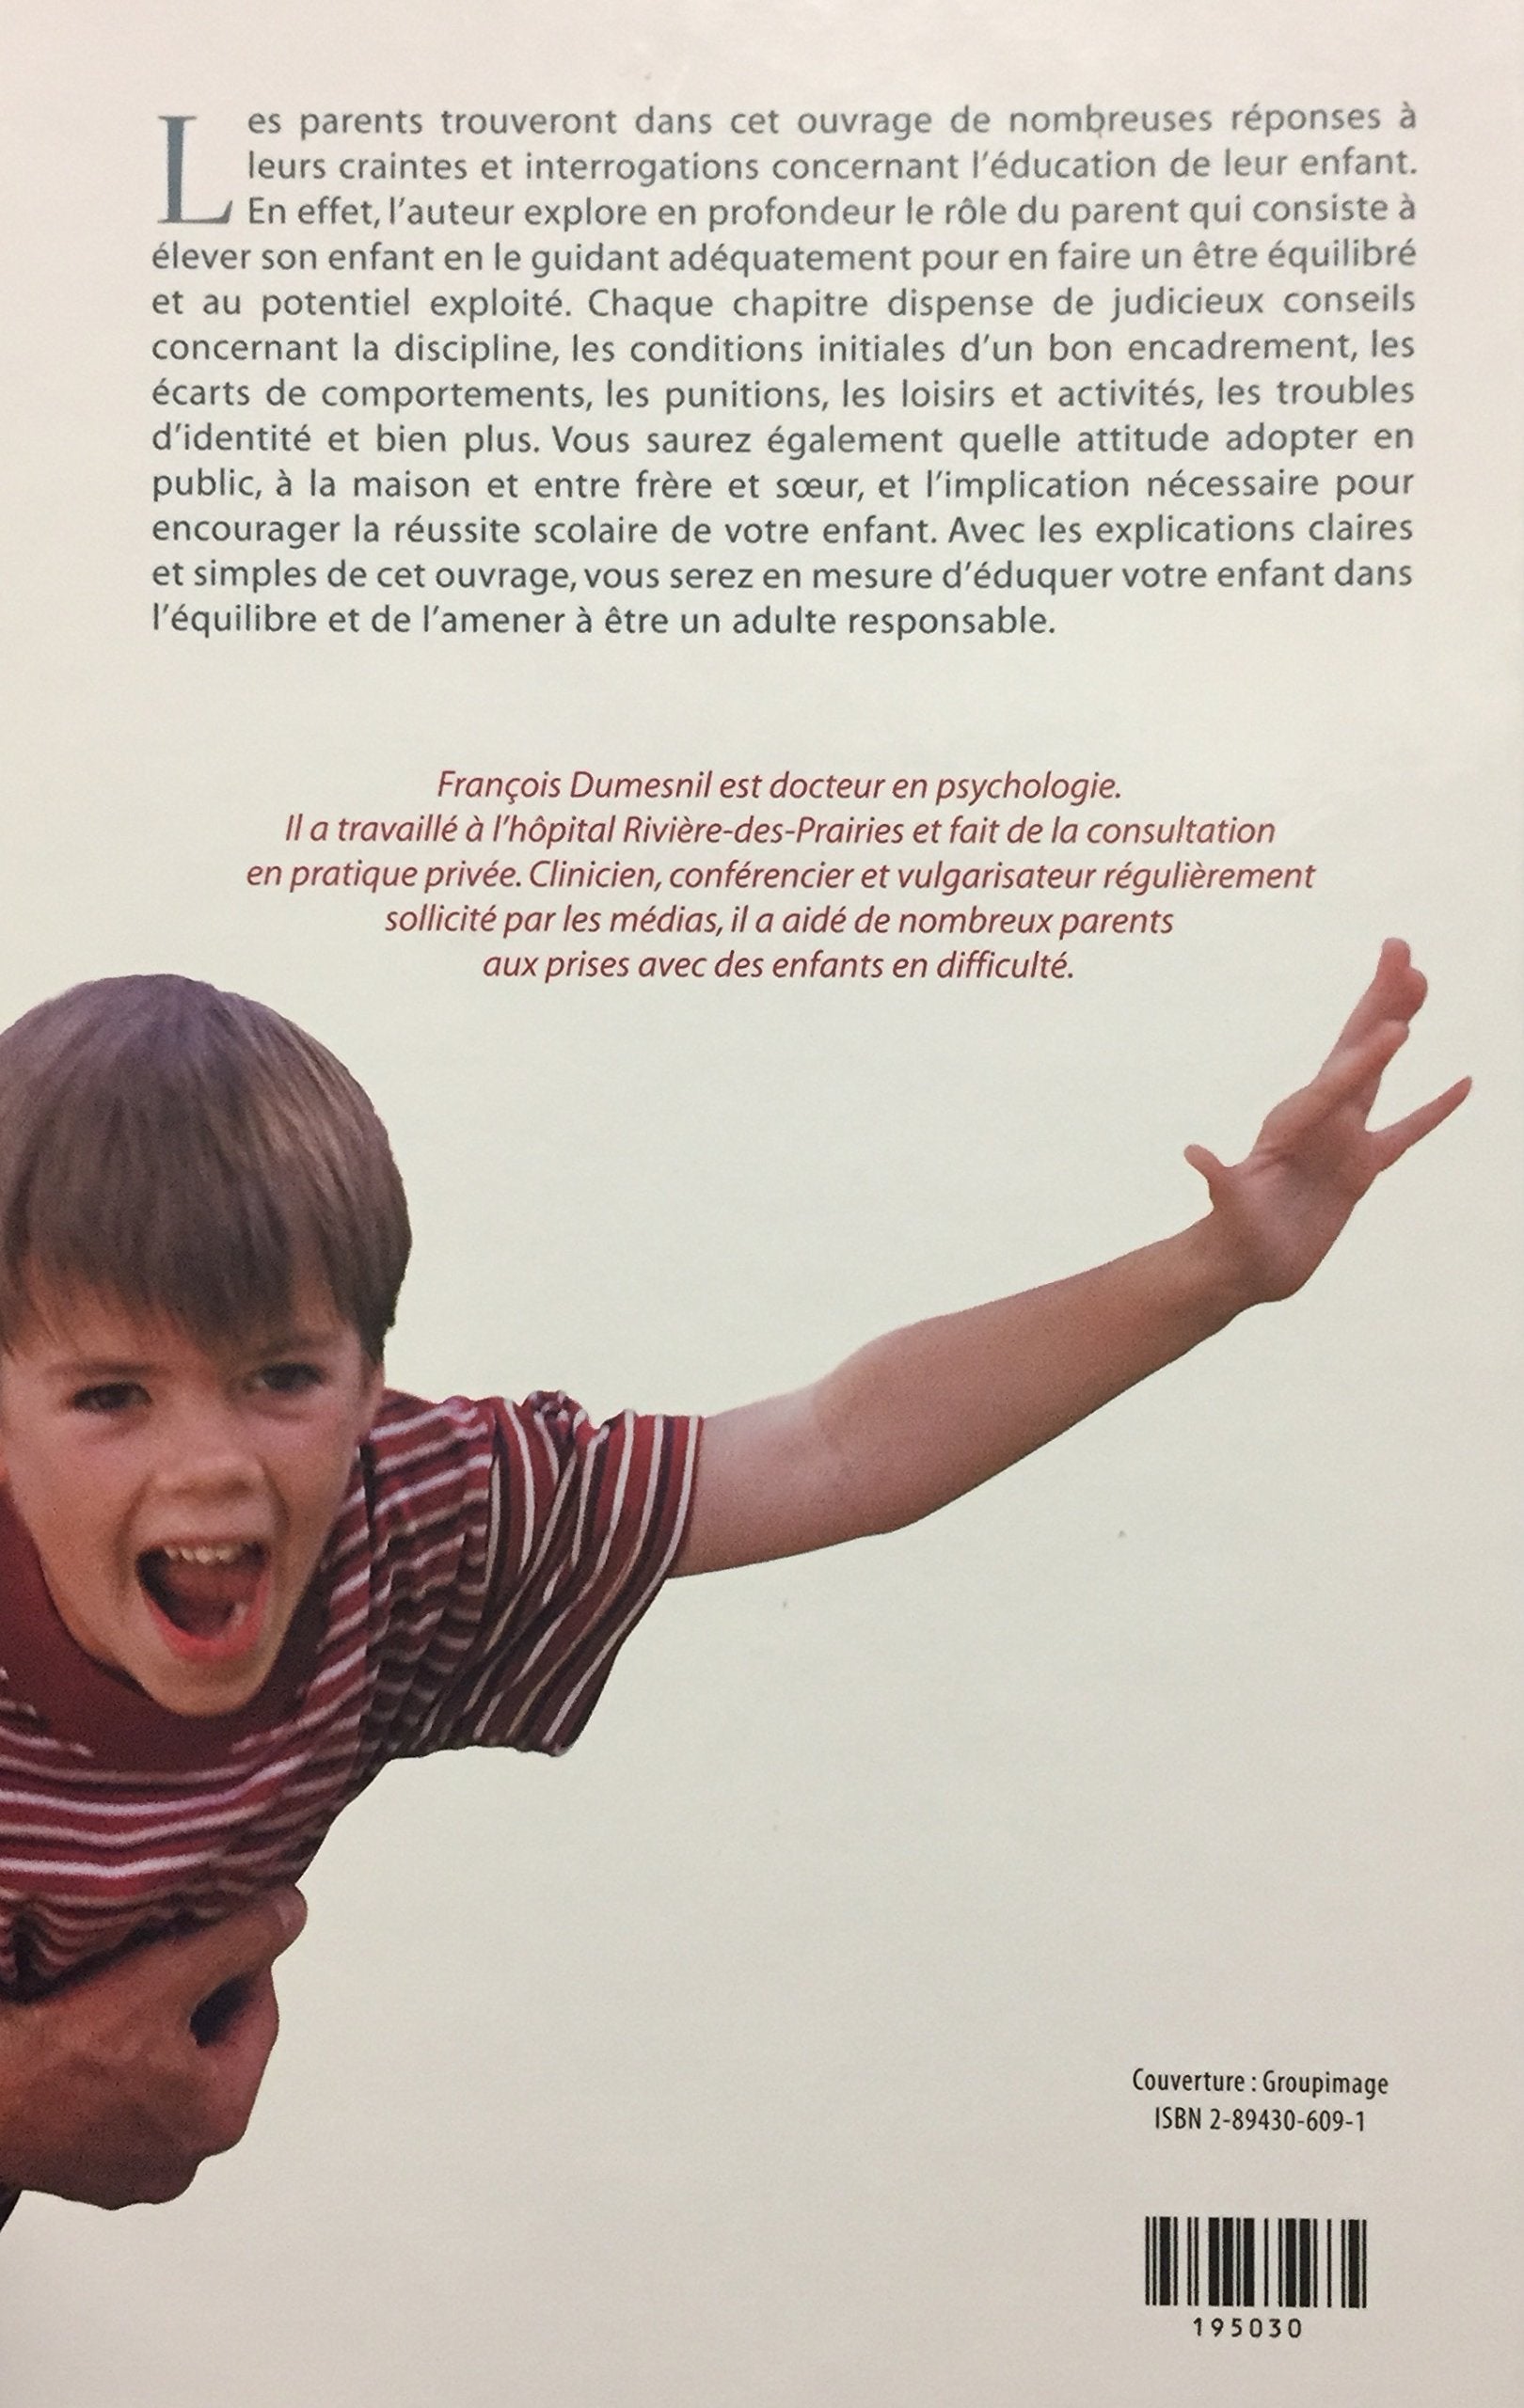 Parent responsable, enfant équilibré (François Dumesnil)